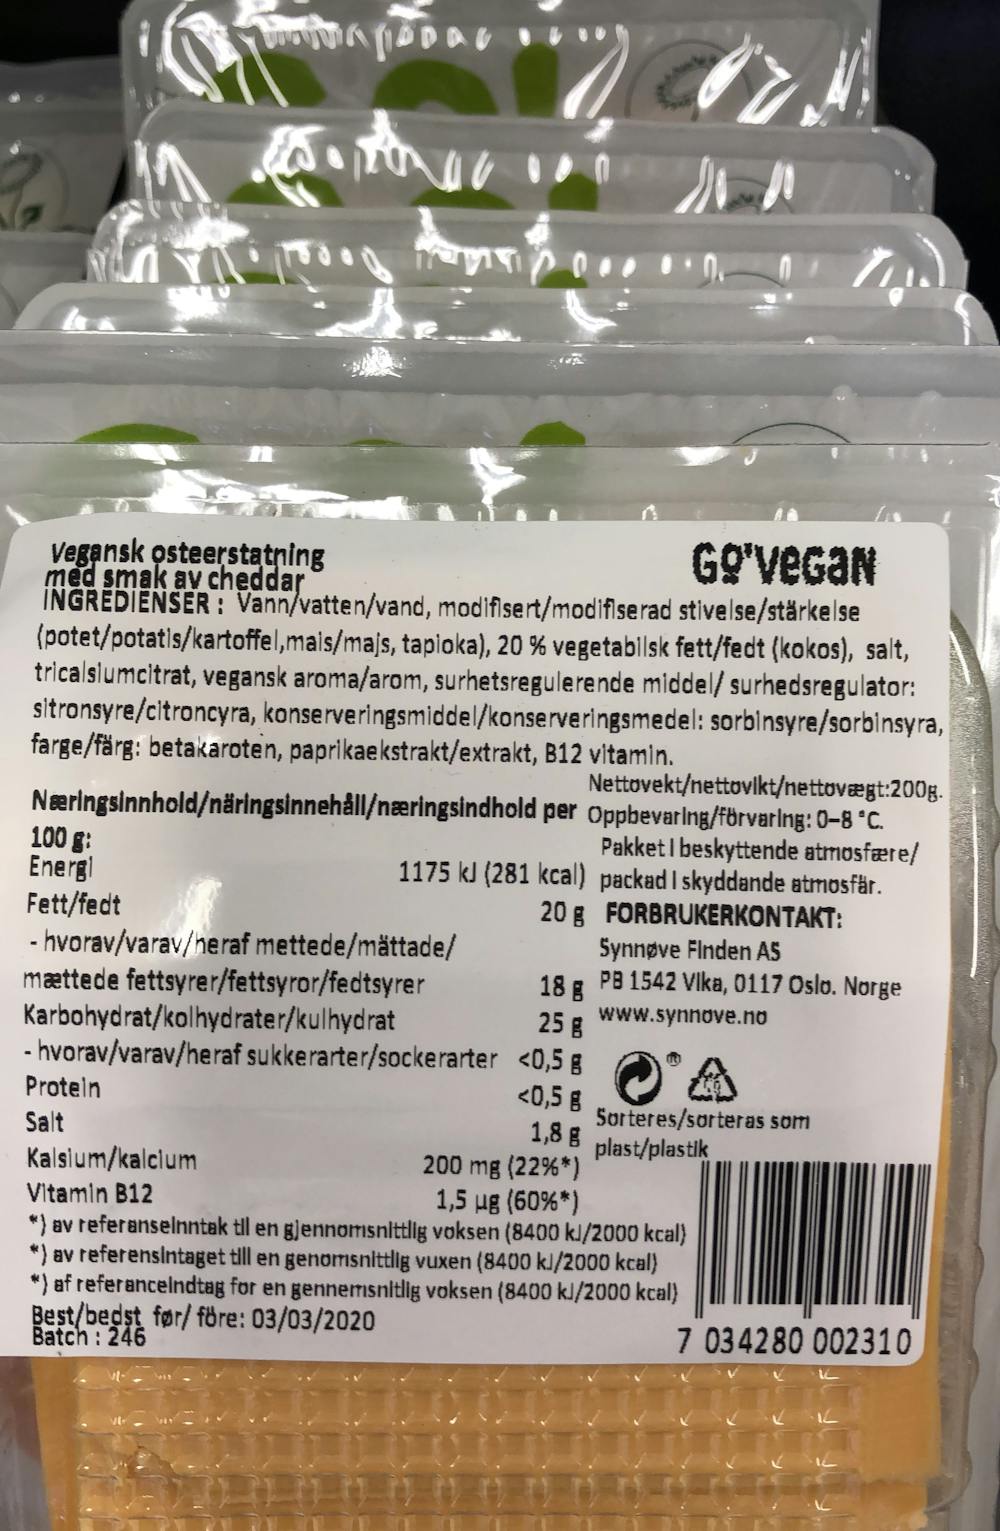 Ingredienslisten til Go' vegan smak av cheddar, Synnøve